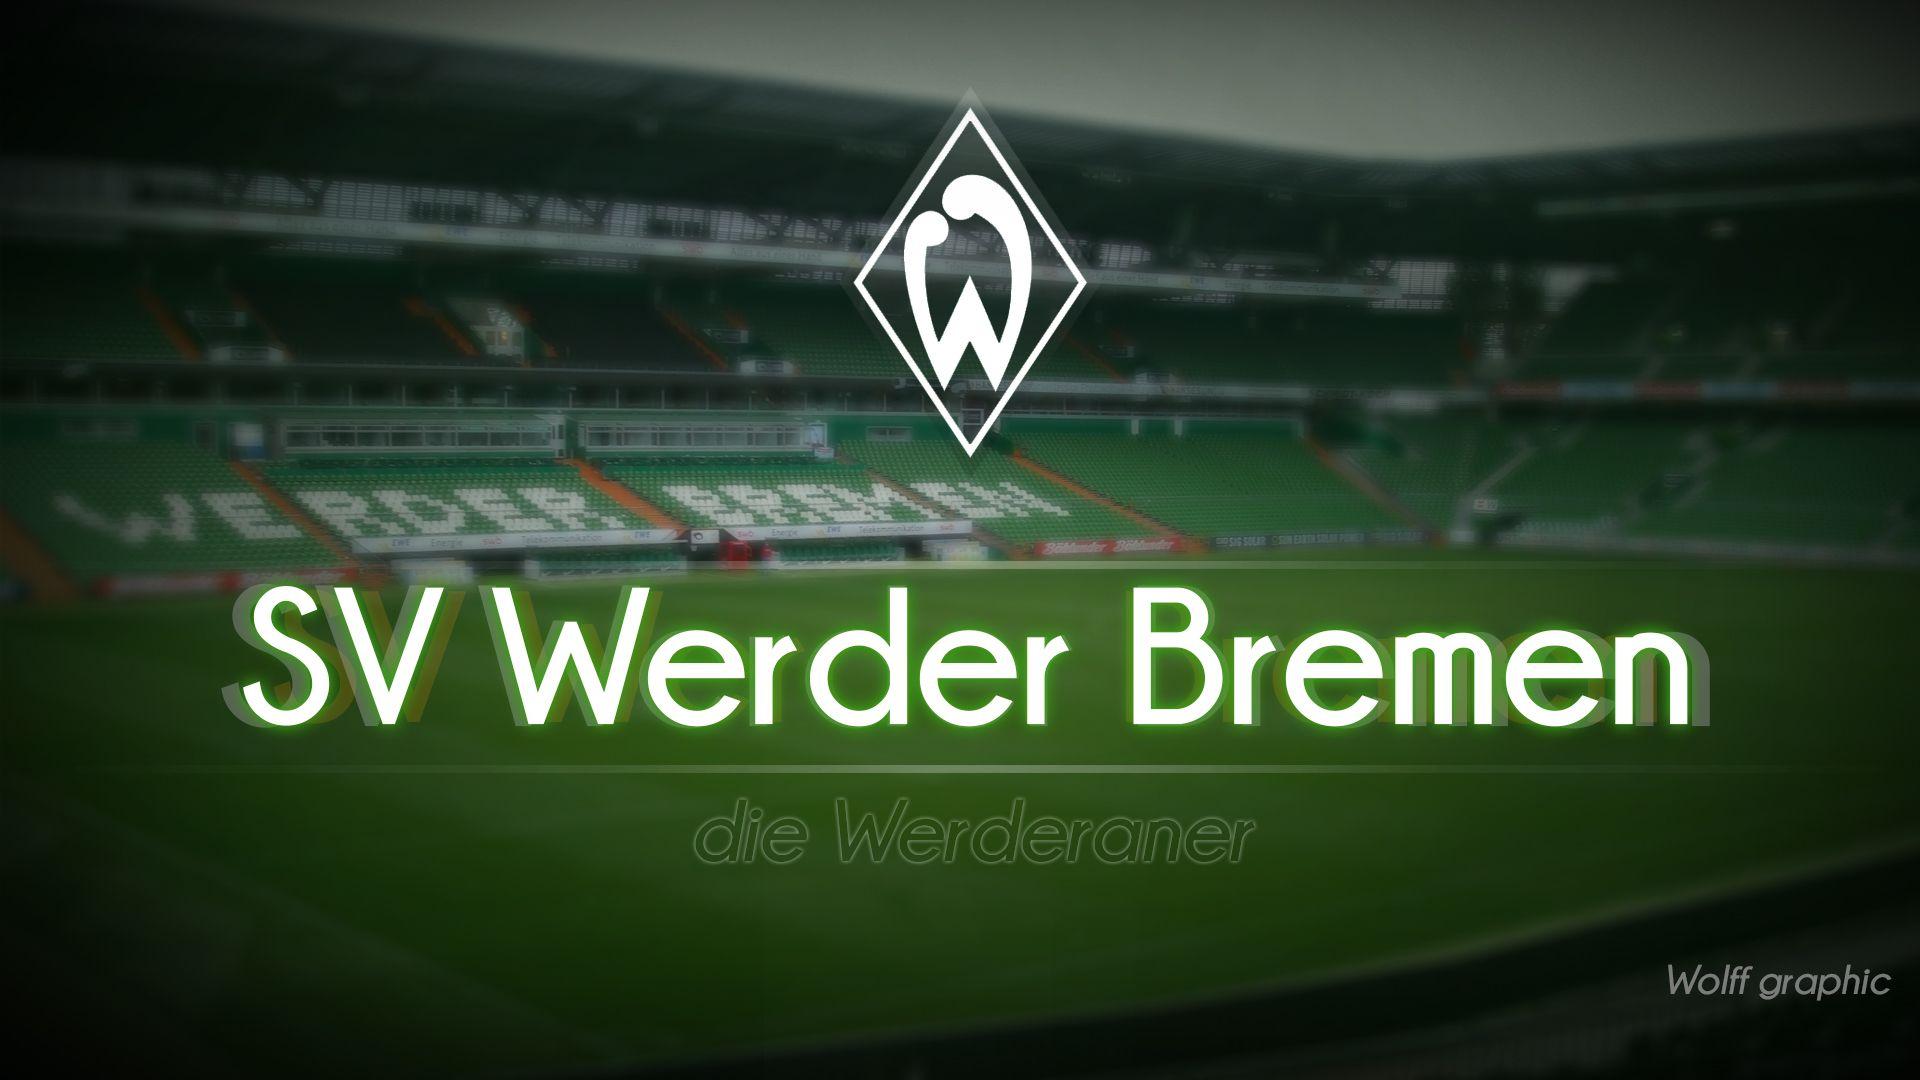 SV Werder Bremen. BL Werder Bremen